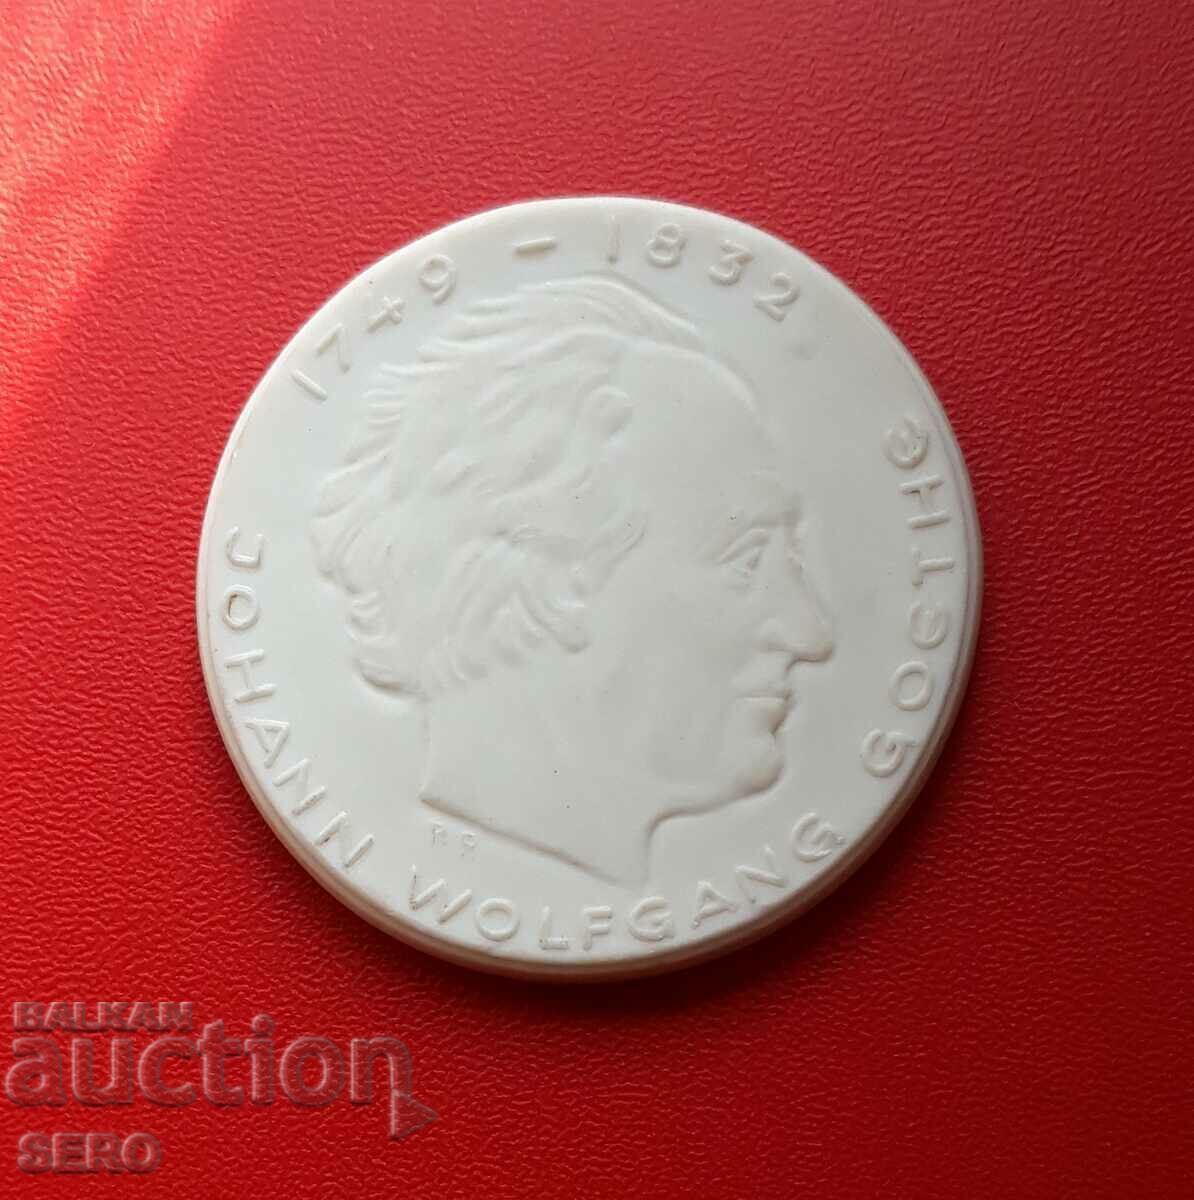 Germany-GDR-Porcelain Medal-Johann Wolfgang von Goethe